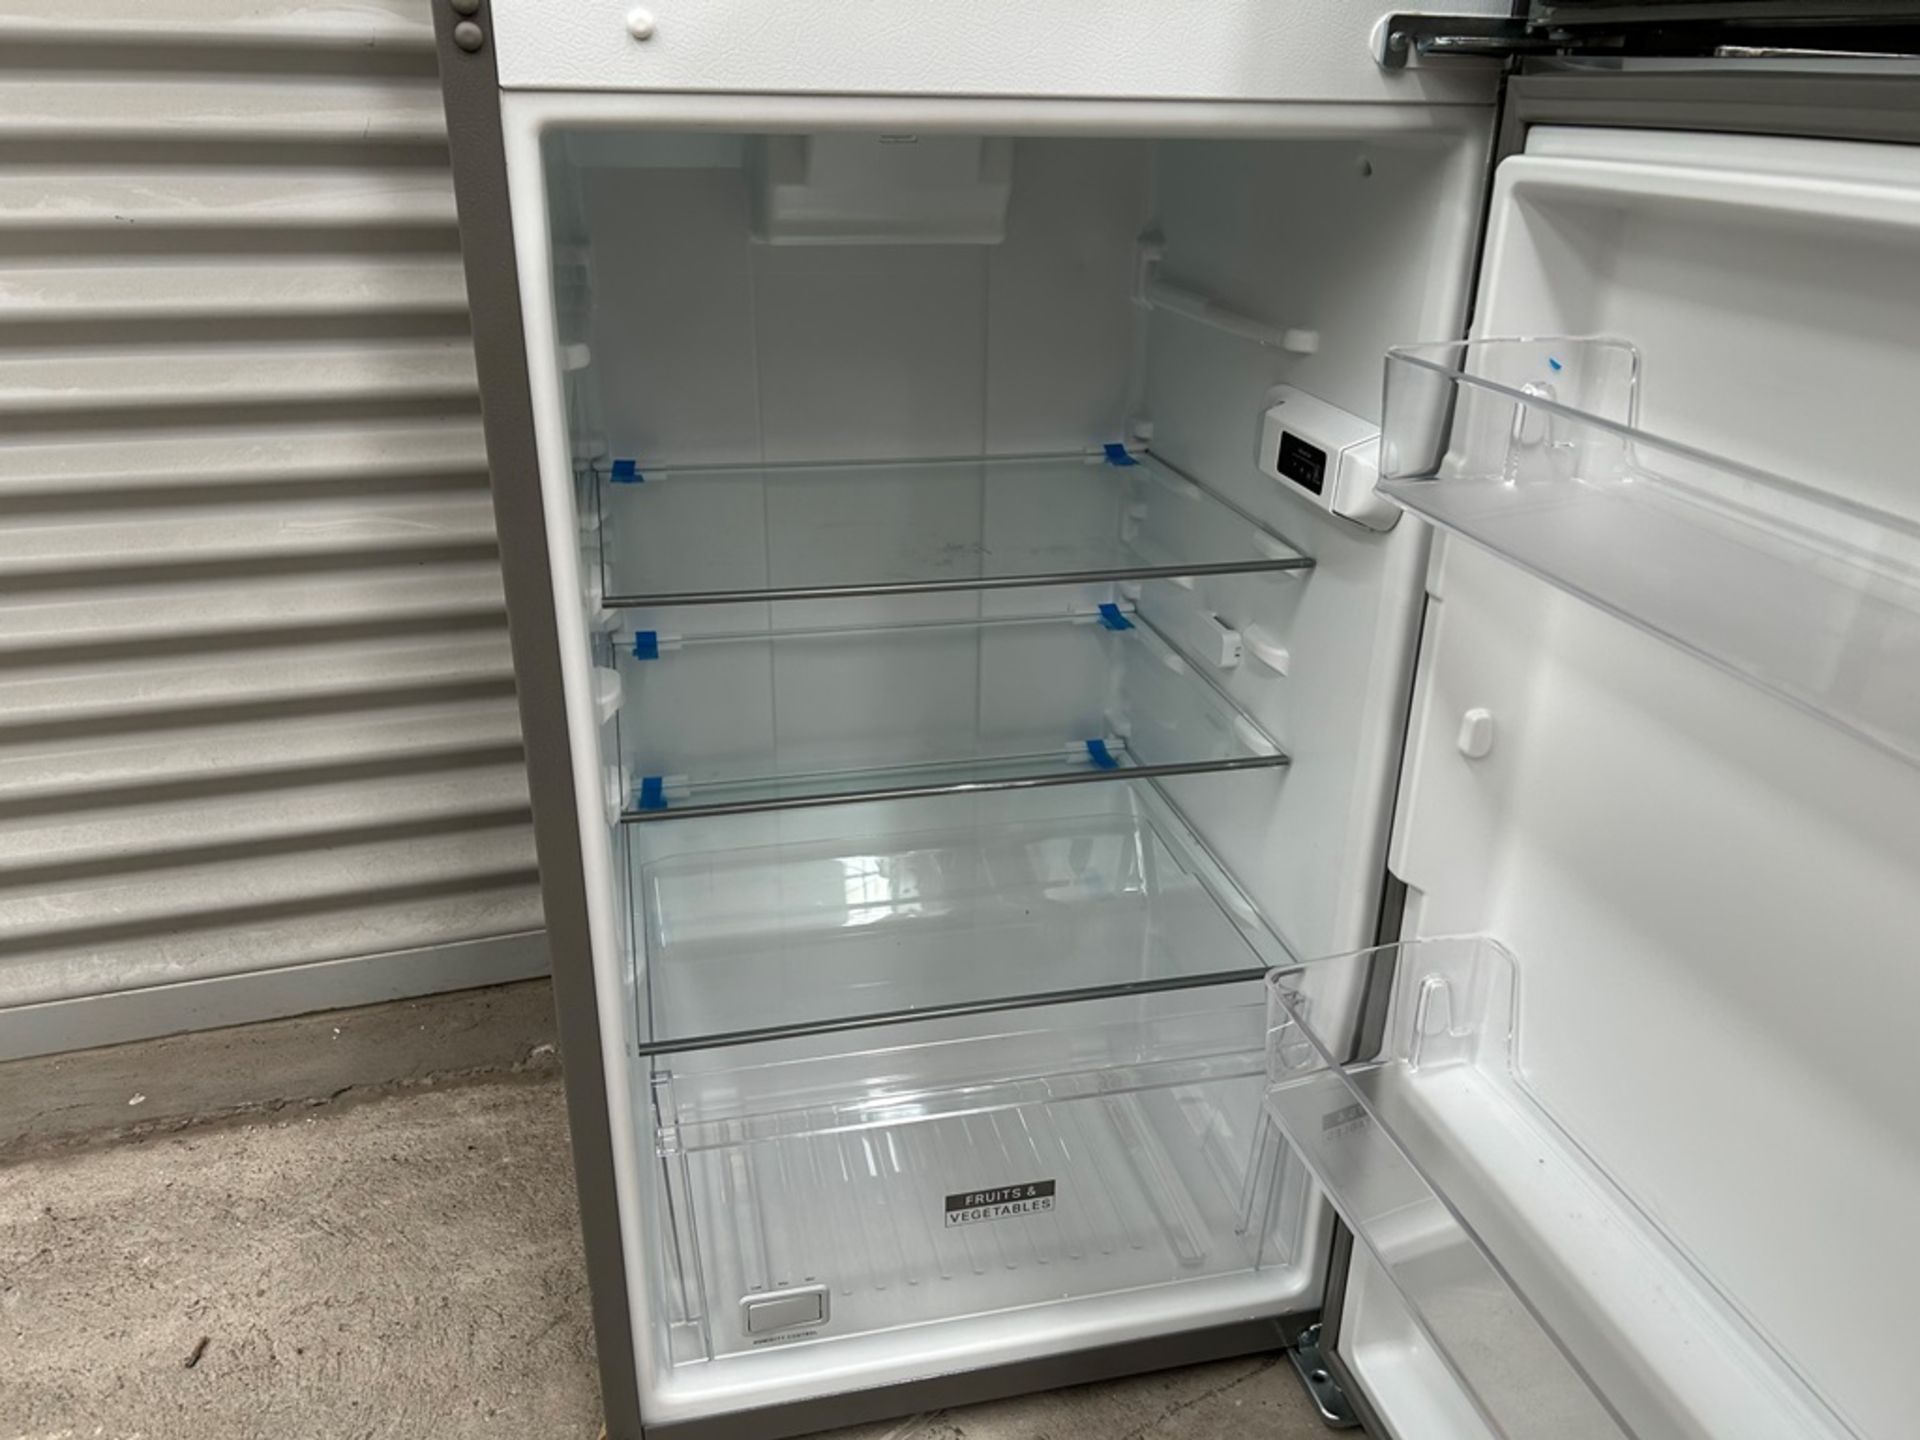 Lote de 2 refrigeradores contiene: 1 Refrigerador Marca WHIRPOOL, Modelo WT1230K, Serie 91306, Colo - Image 7 of 17